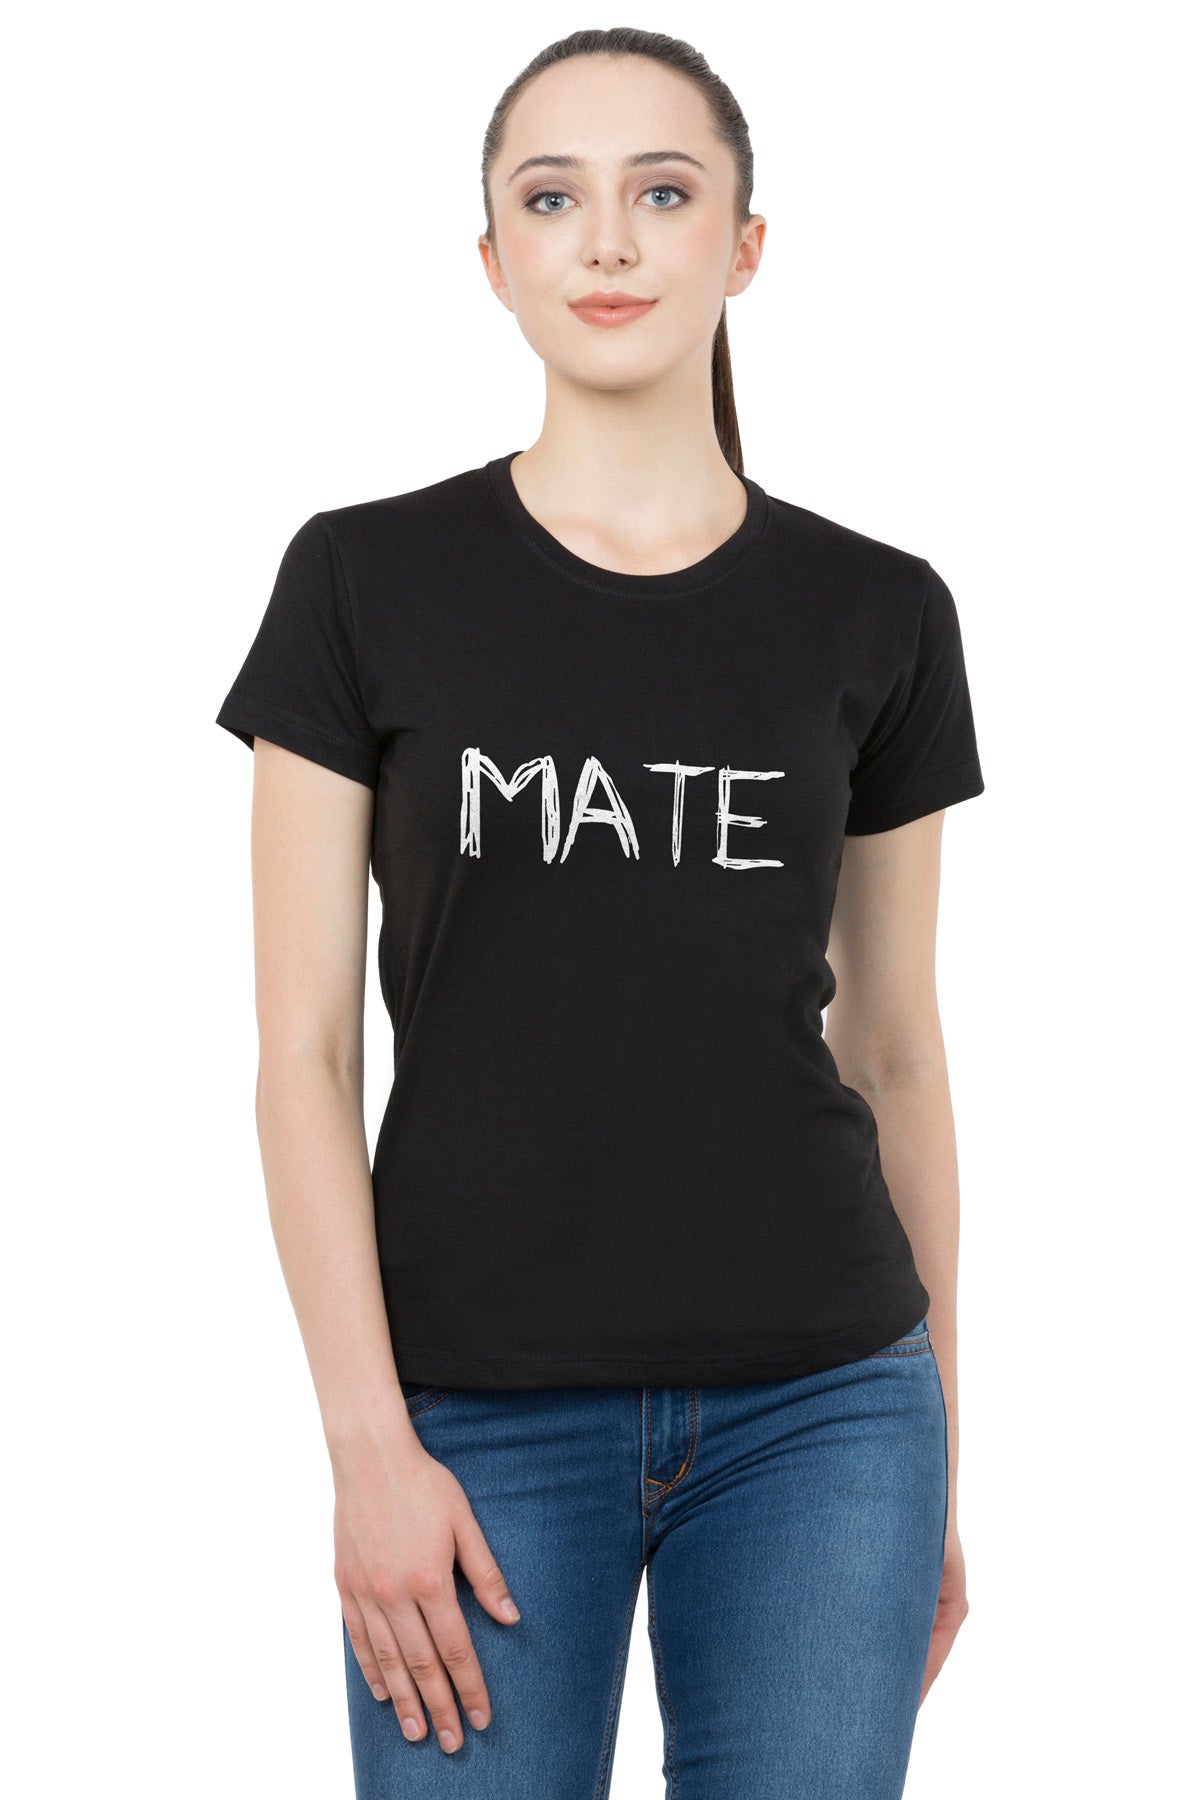 Soul Mate matching Couple T shirts- Black